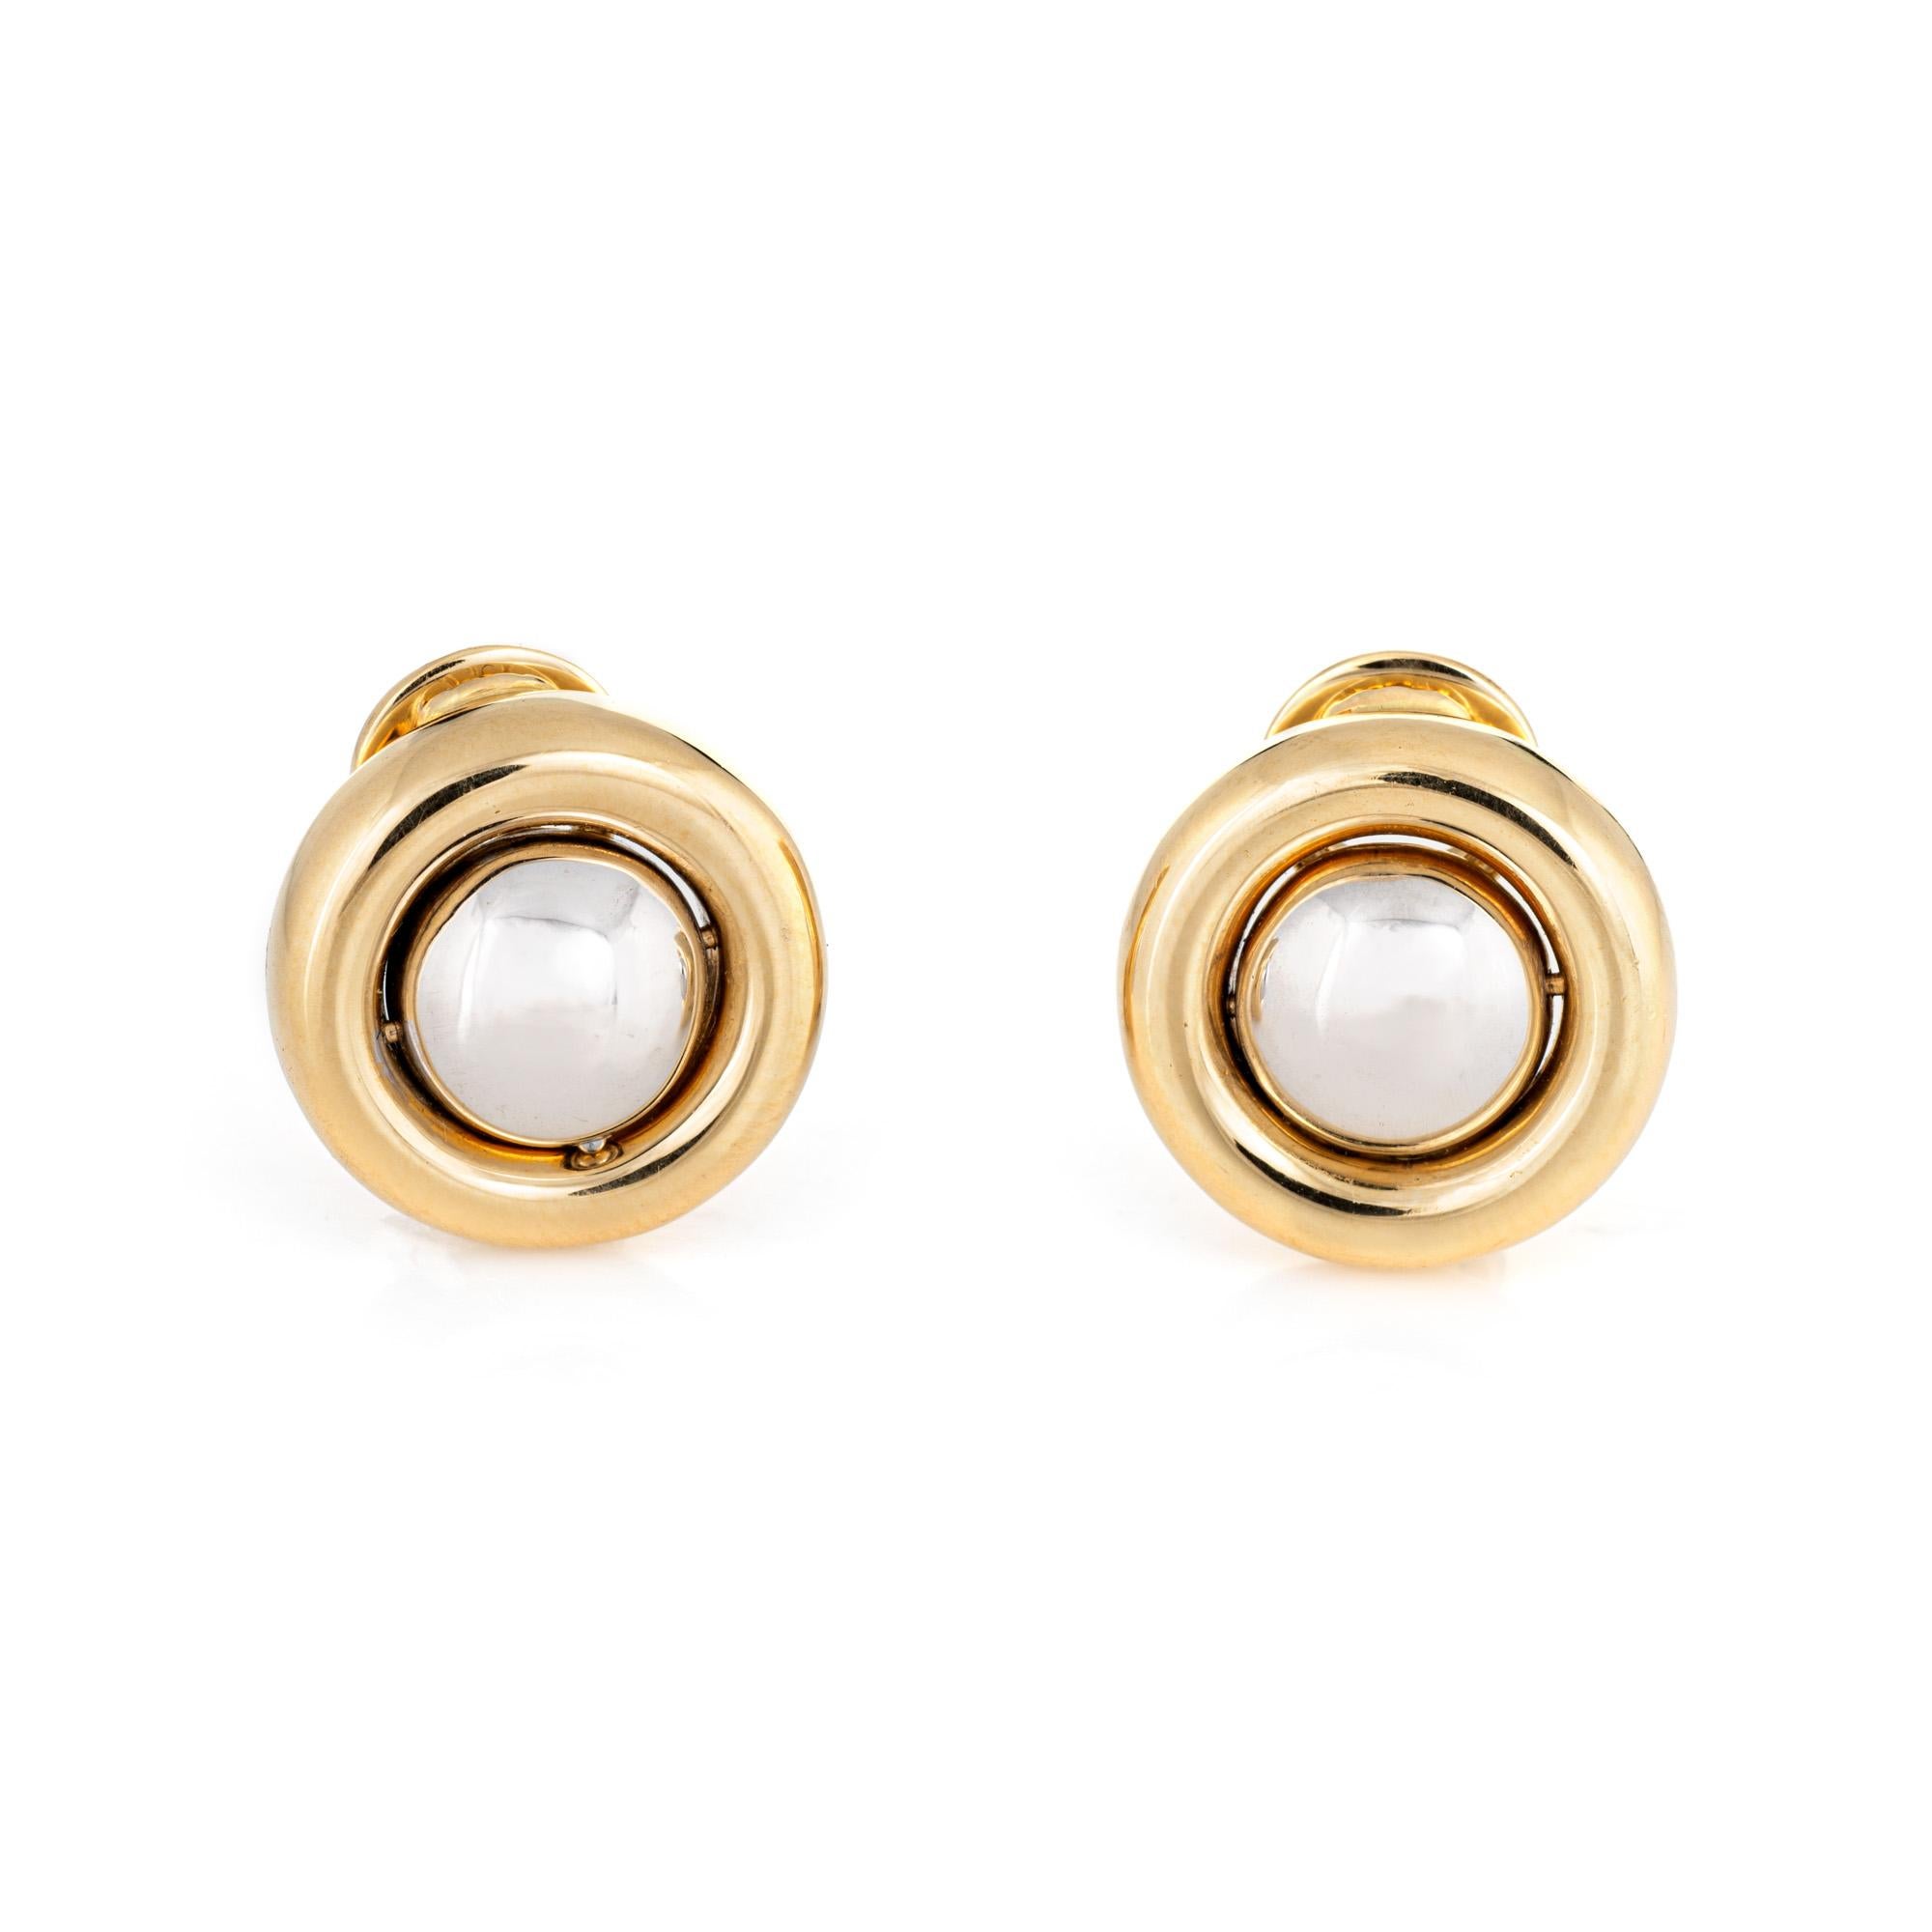 Elegantes Paar beweglicher Diamantohrringe von Chopard aus 18 Karat Gelbgold. 

Die Diamanten sind in der Mitte eingefasst und haben insgesamt ein geschätztes Gewicht von 1 Karat (geschätzte Farbe F-G und Reinheit VS2).  

Die Ohrringe verfügen über